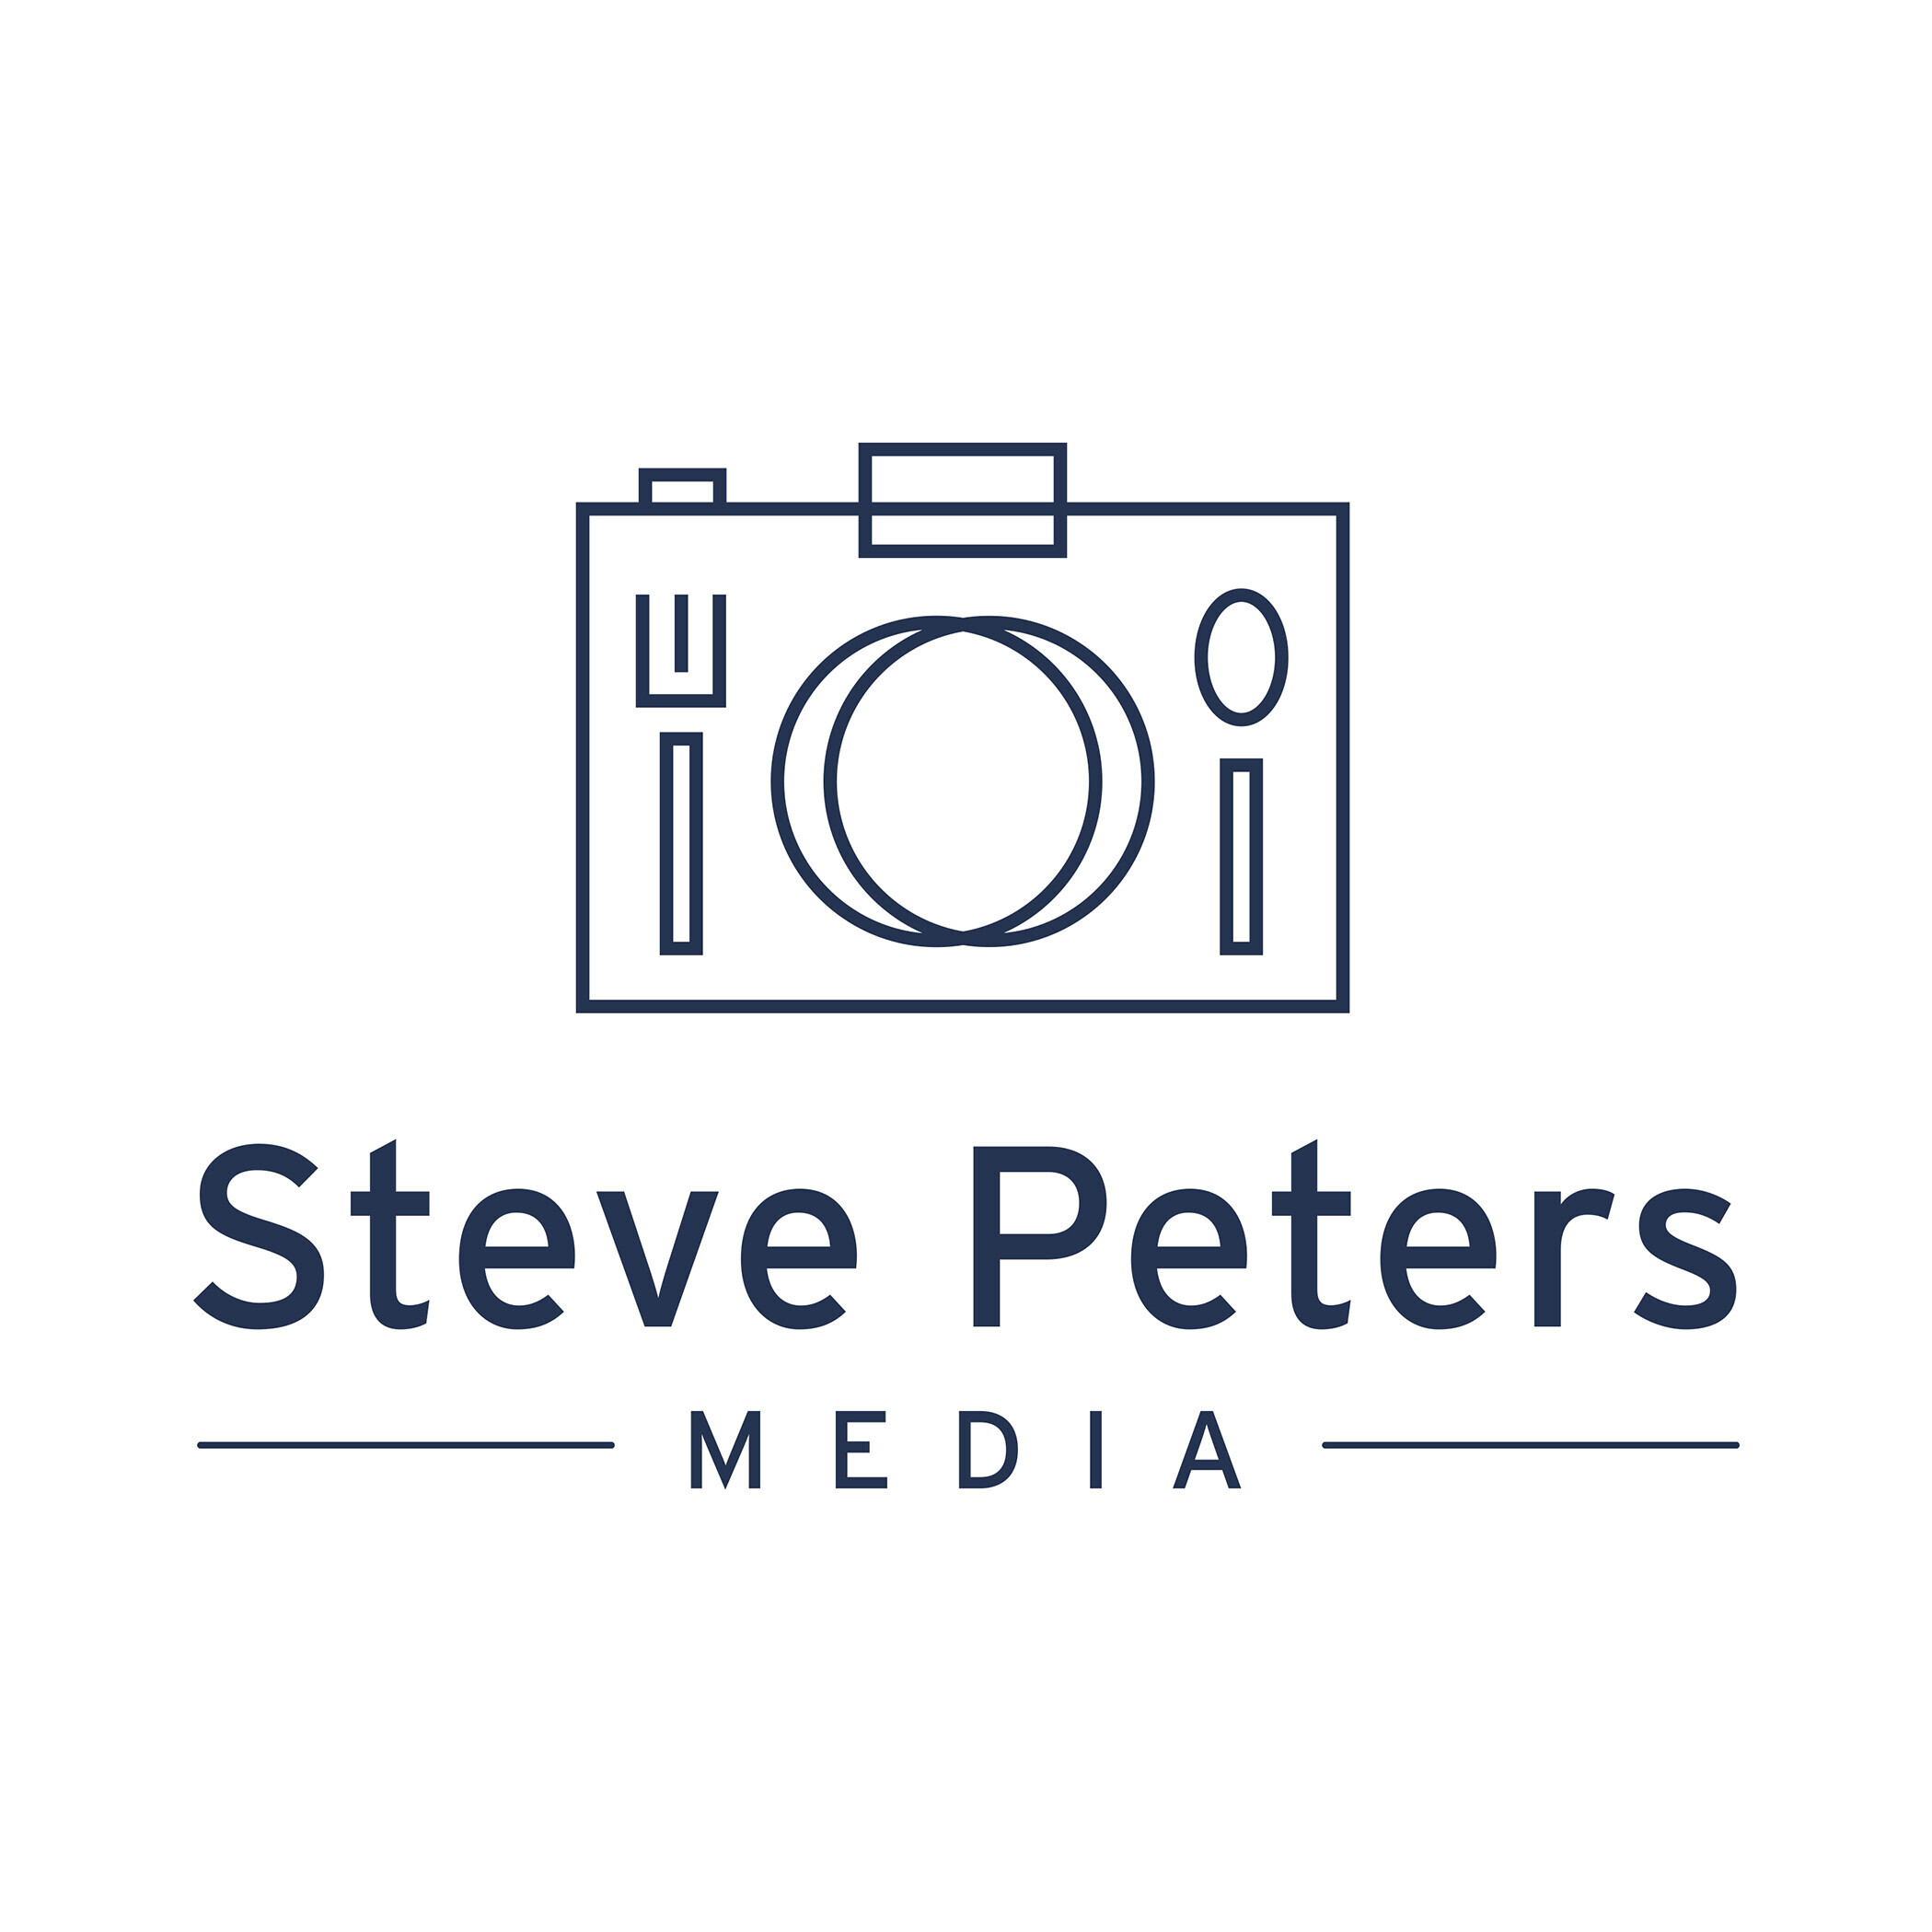 Steve Peters Media